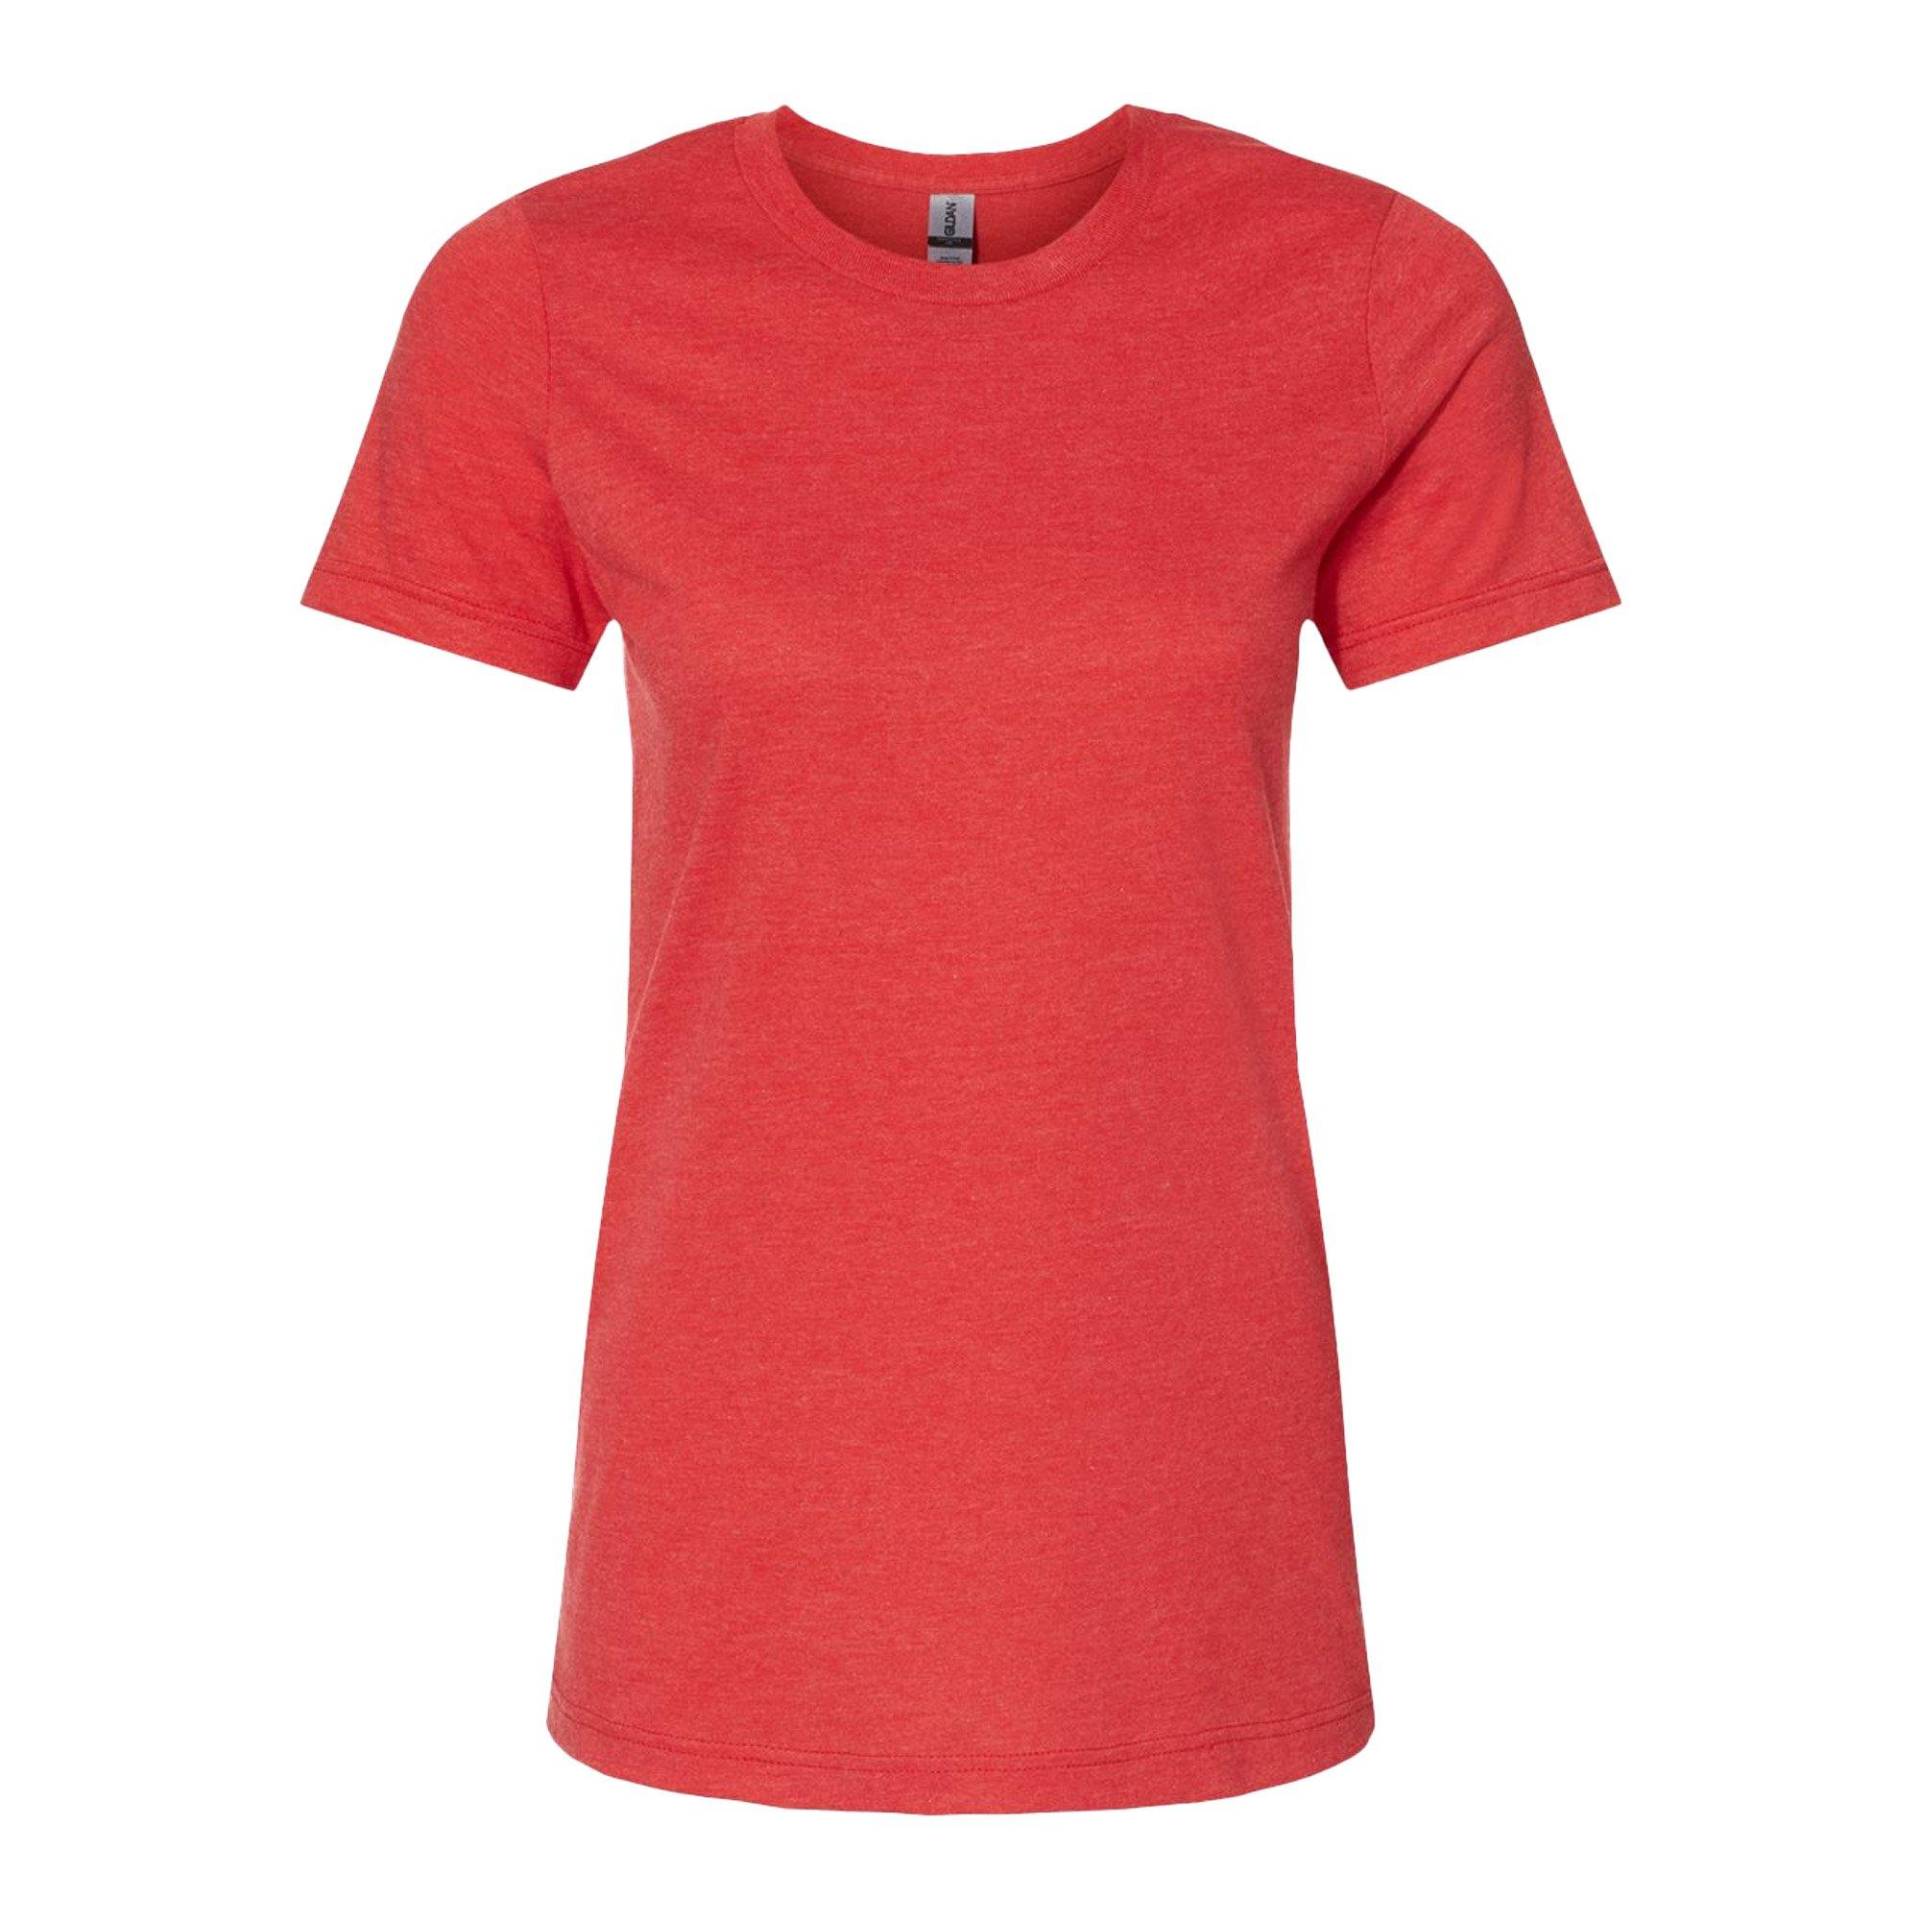 Softstyle Tshirt Damen Rot Bunt XL von Gildan